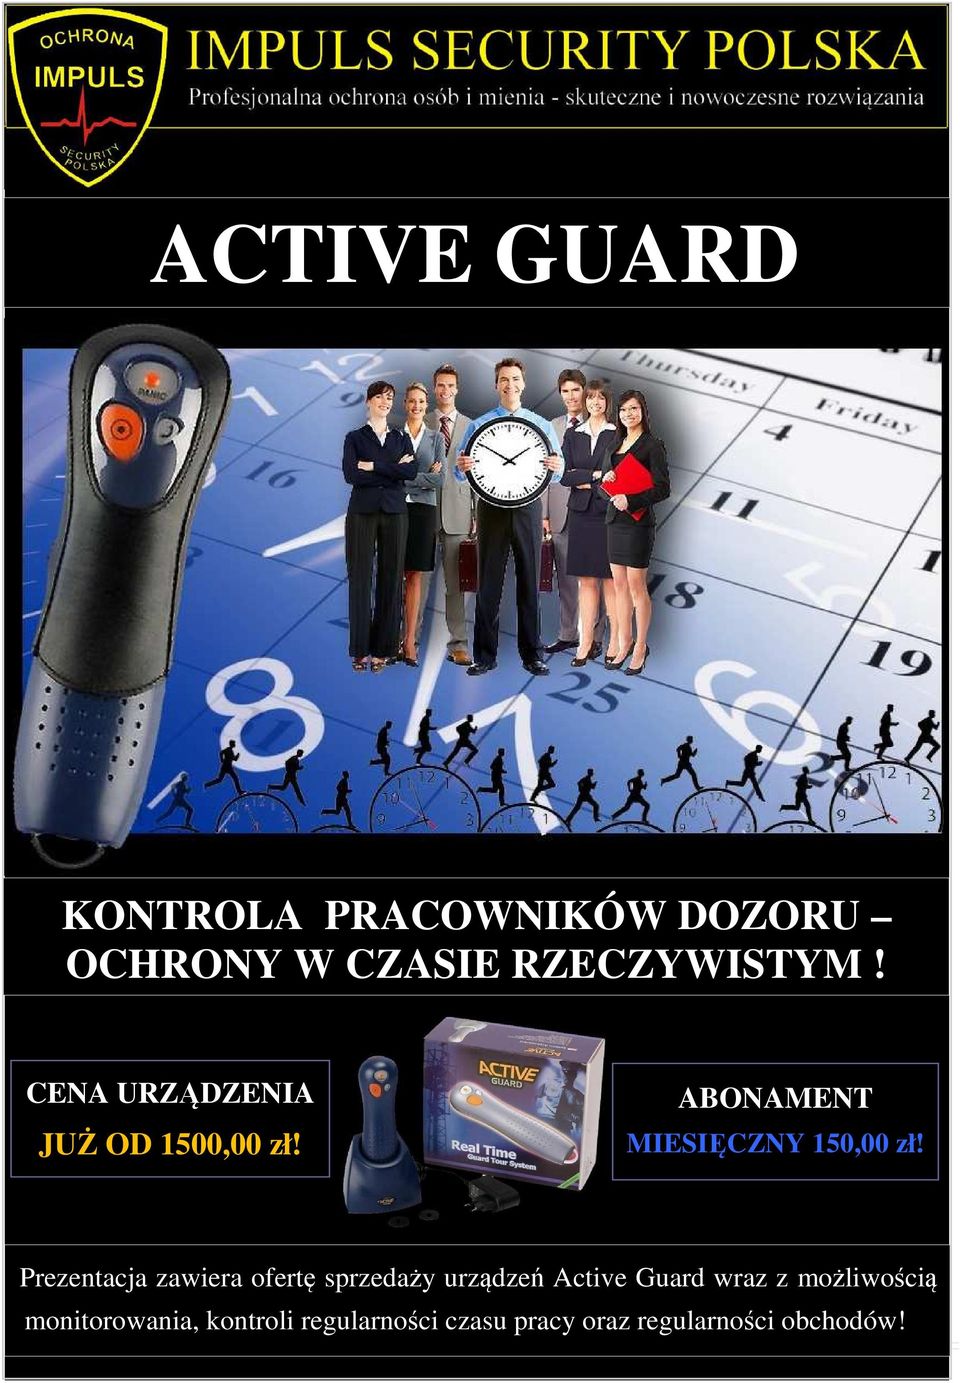 Prezentacja zawiera ofertę sprzedaży urządzeń Active Guard wraz z